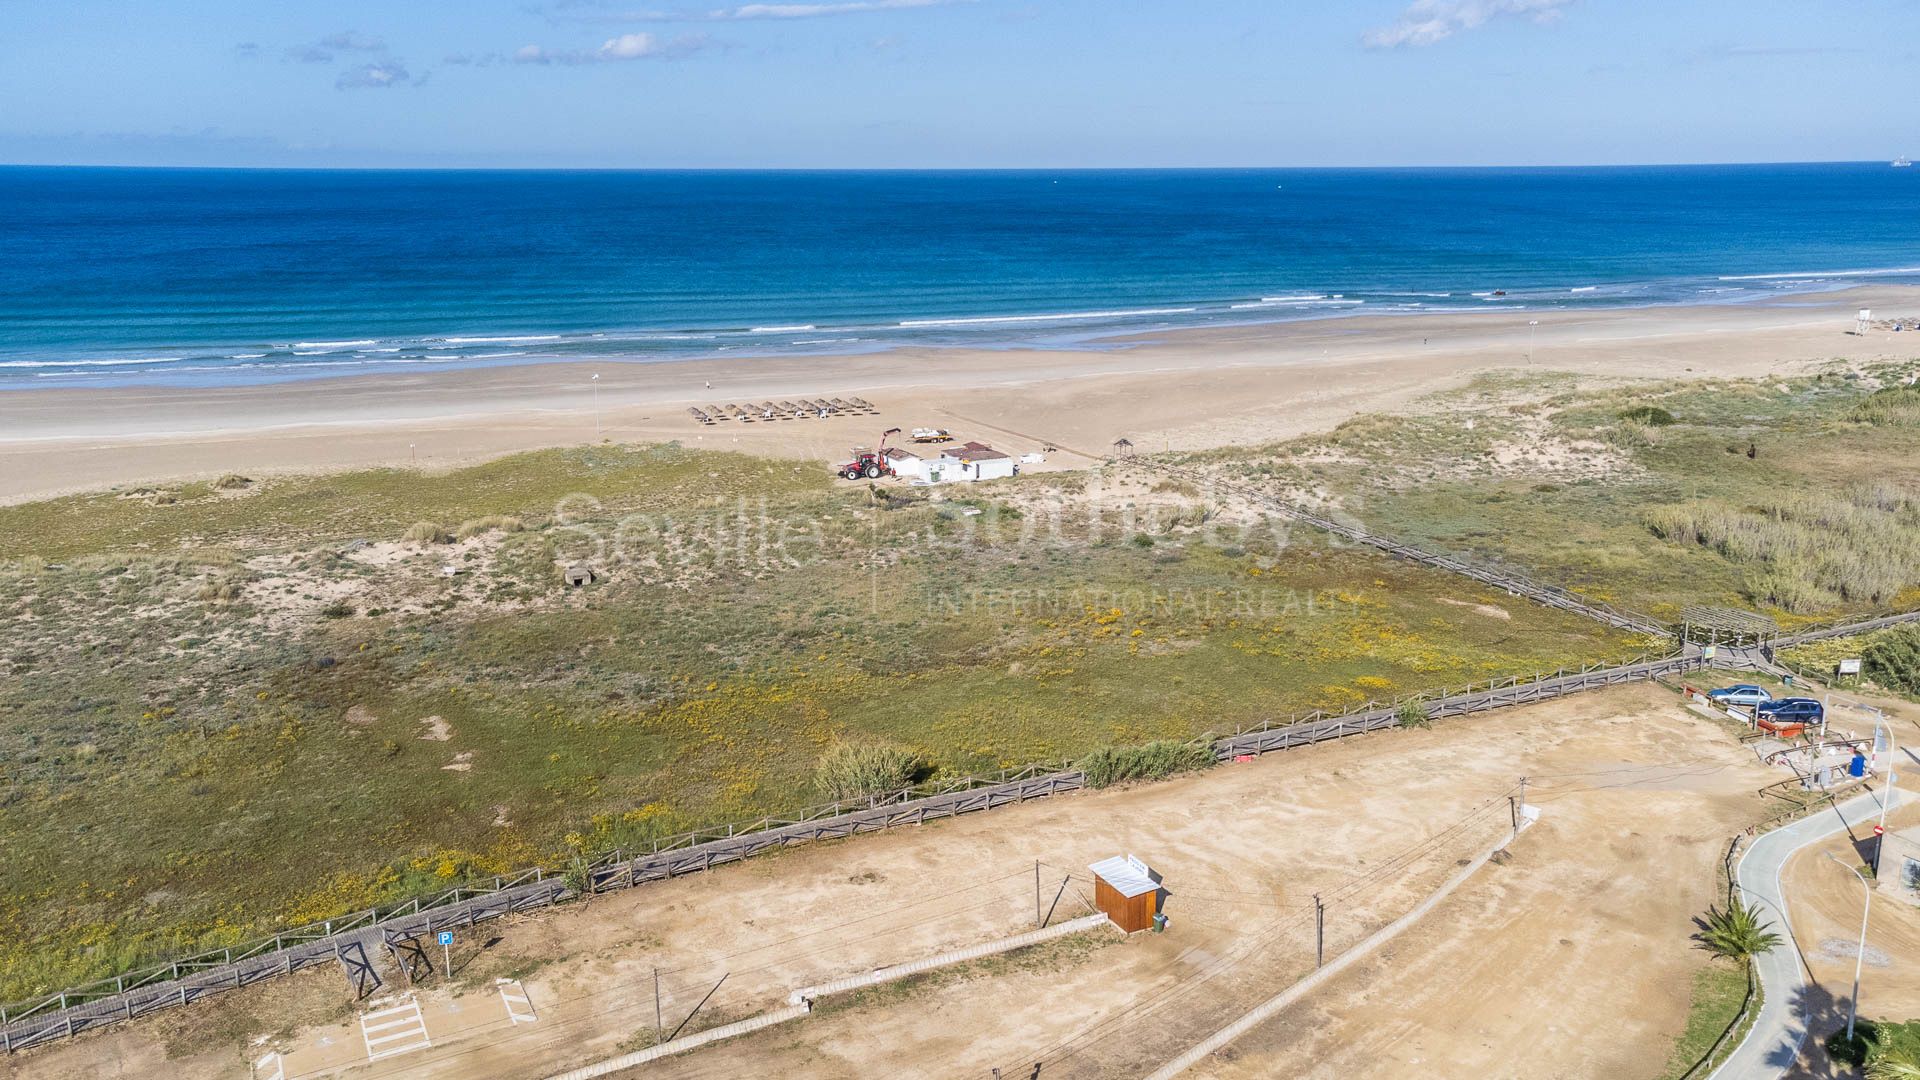 Piso situado a pocos metros de la playa en Zahara de los Atunes